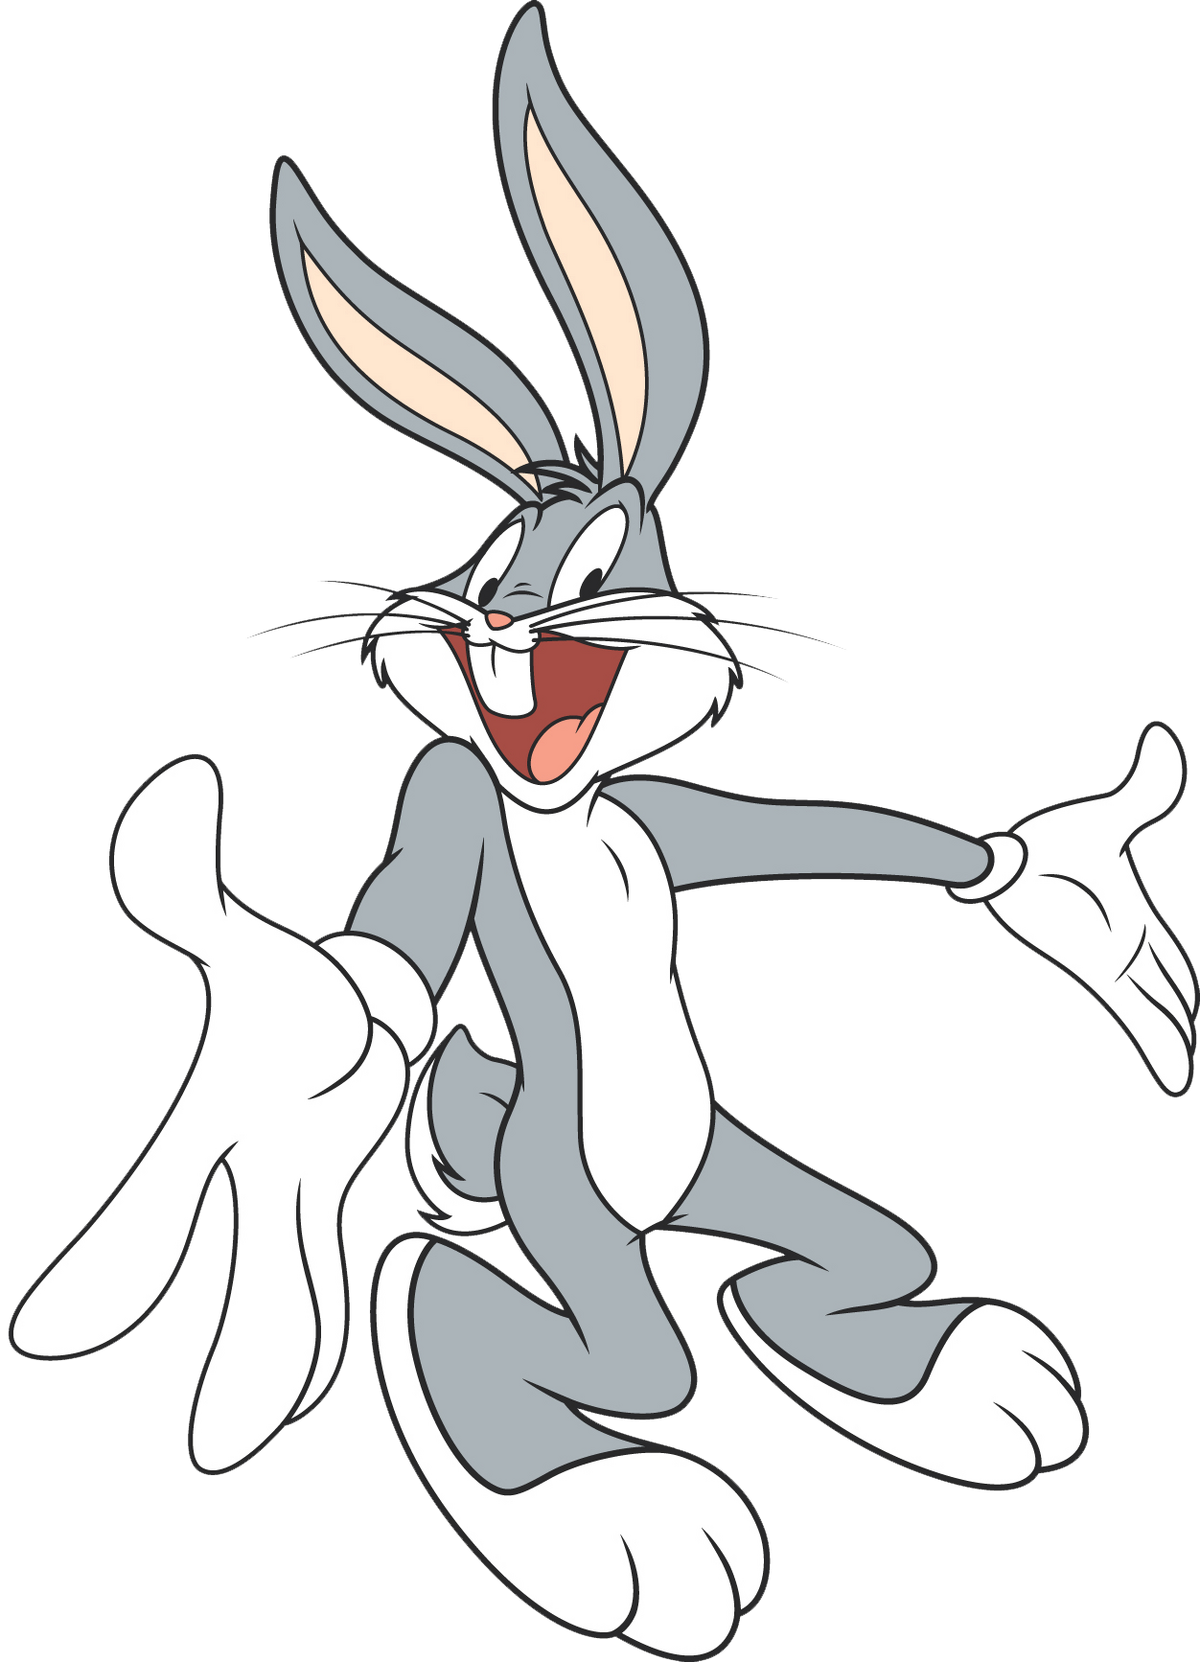 Я самый заяц бакс бани. Кролик Багз Банни. Багз заяц заяц Банни. Луни Тюнз кролик Багз Банни. Б̆̈ӑ̈к̆̈с̆̈ б̆̈ӑ̈н̆̈н̆̈й̈.